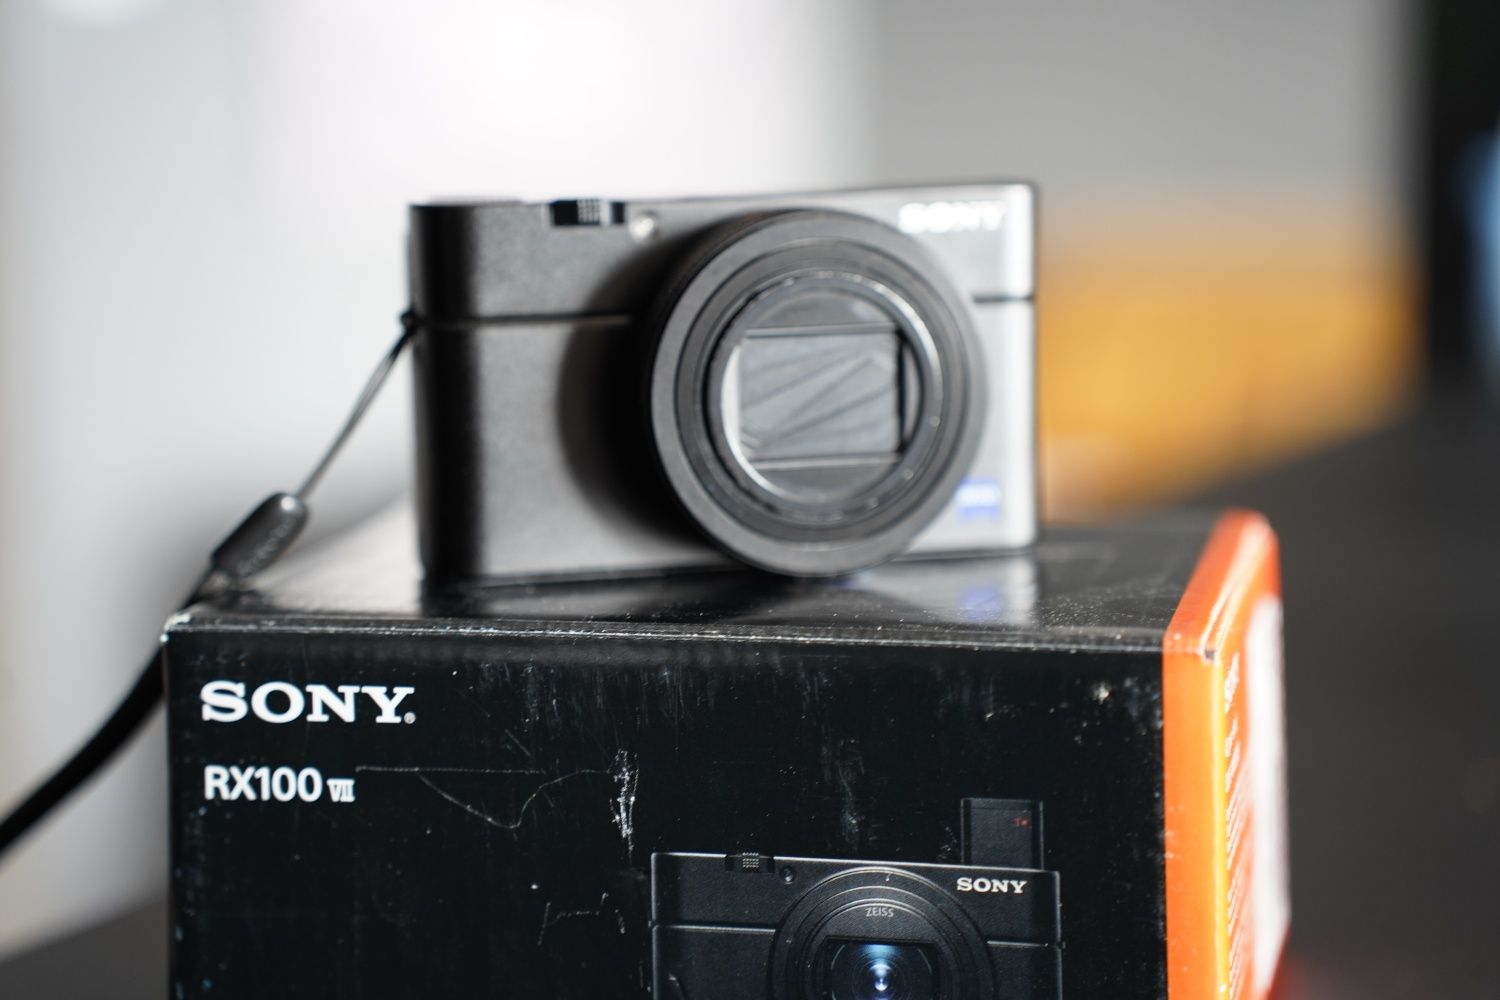 Sony Rx100 VII M7 aparat kompaktowy